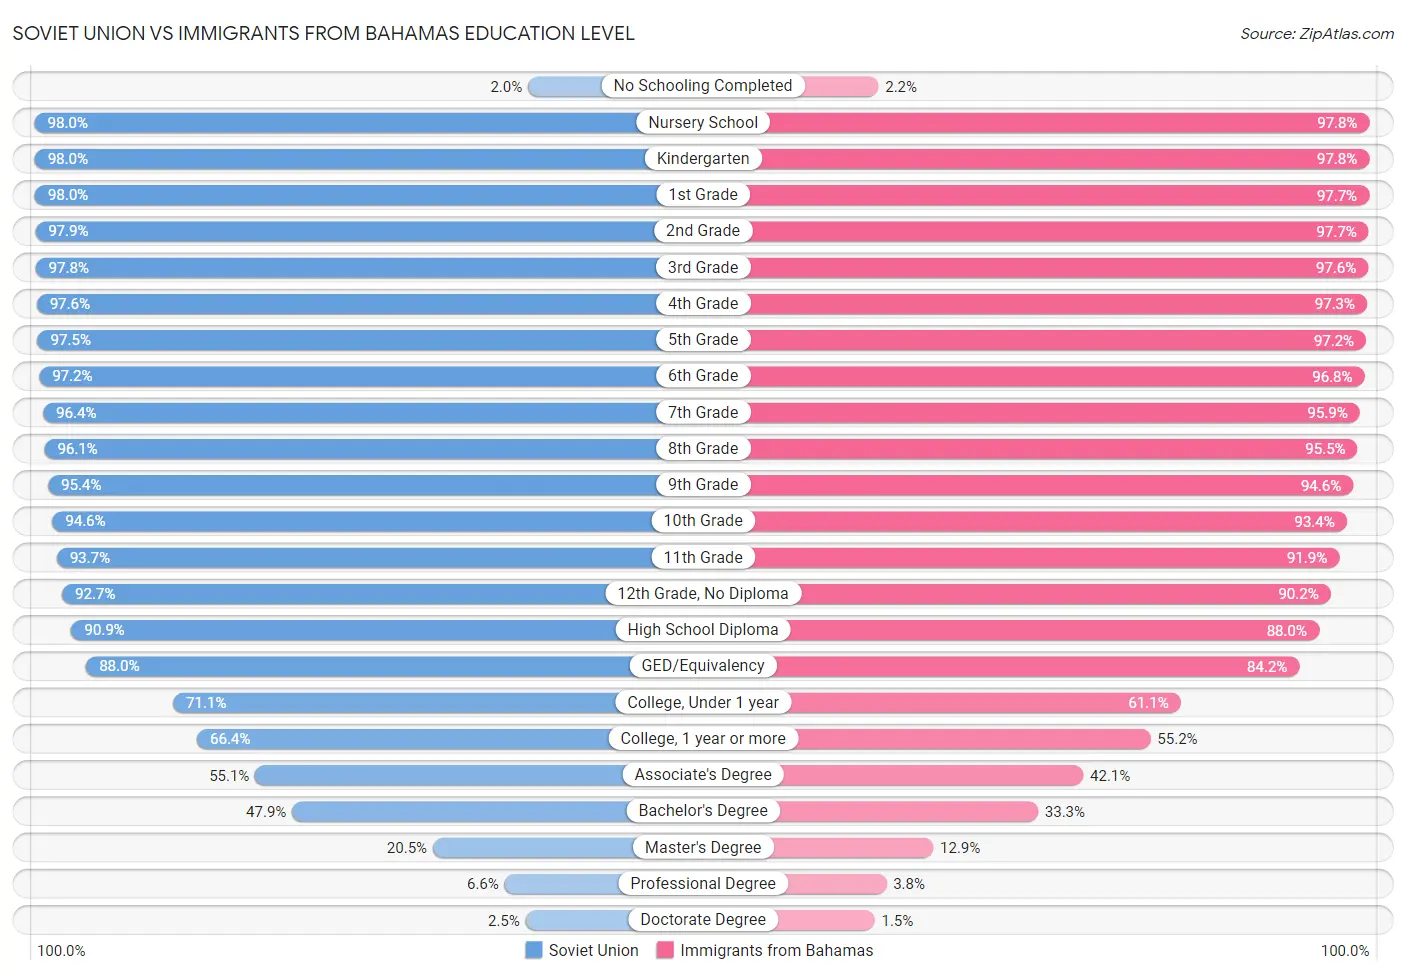 Soviet Union vs Immigrants from Bahamas Education Level